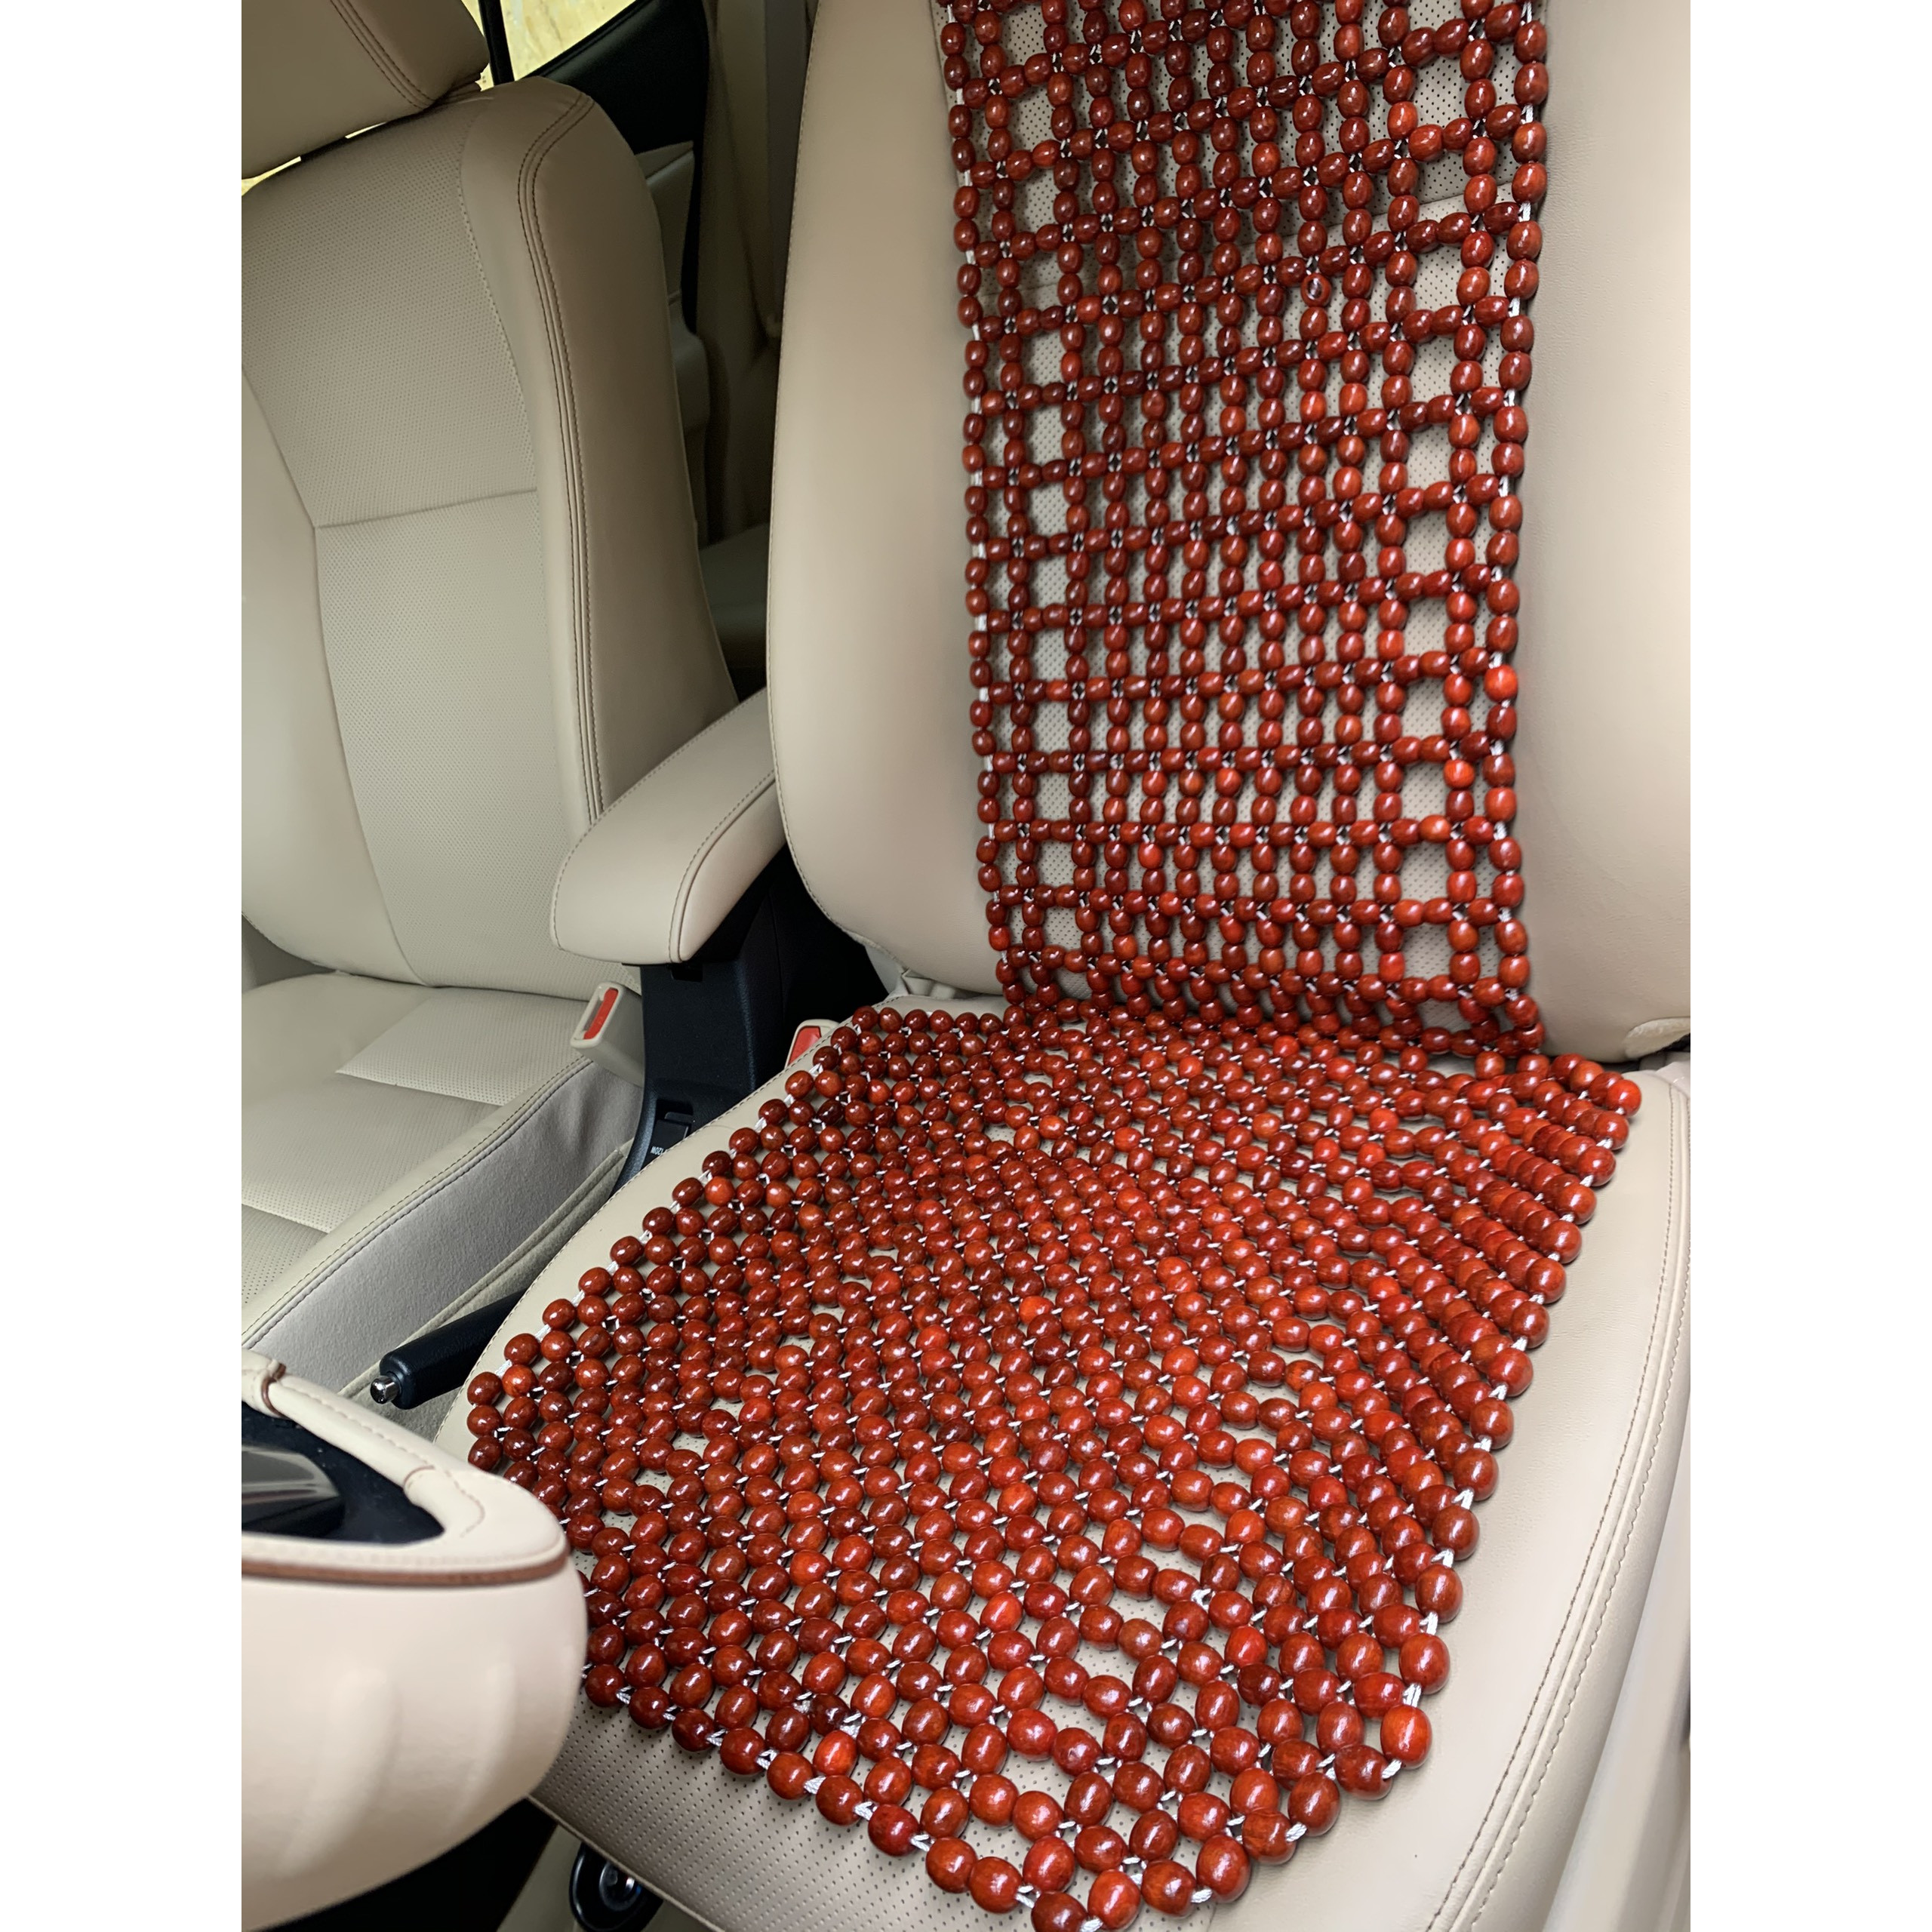 Đệm lót ghế dành cho xe ô tô gỗ nhãn bóng hạt 1,2cm - Hình thật - Nệm mát xa dành cho ghế ô tô , phụ kiện , phụ tùng chăm sóc ghế da ô tô